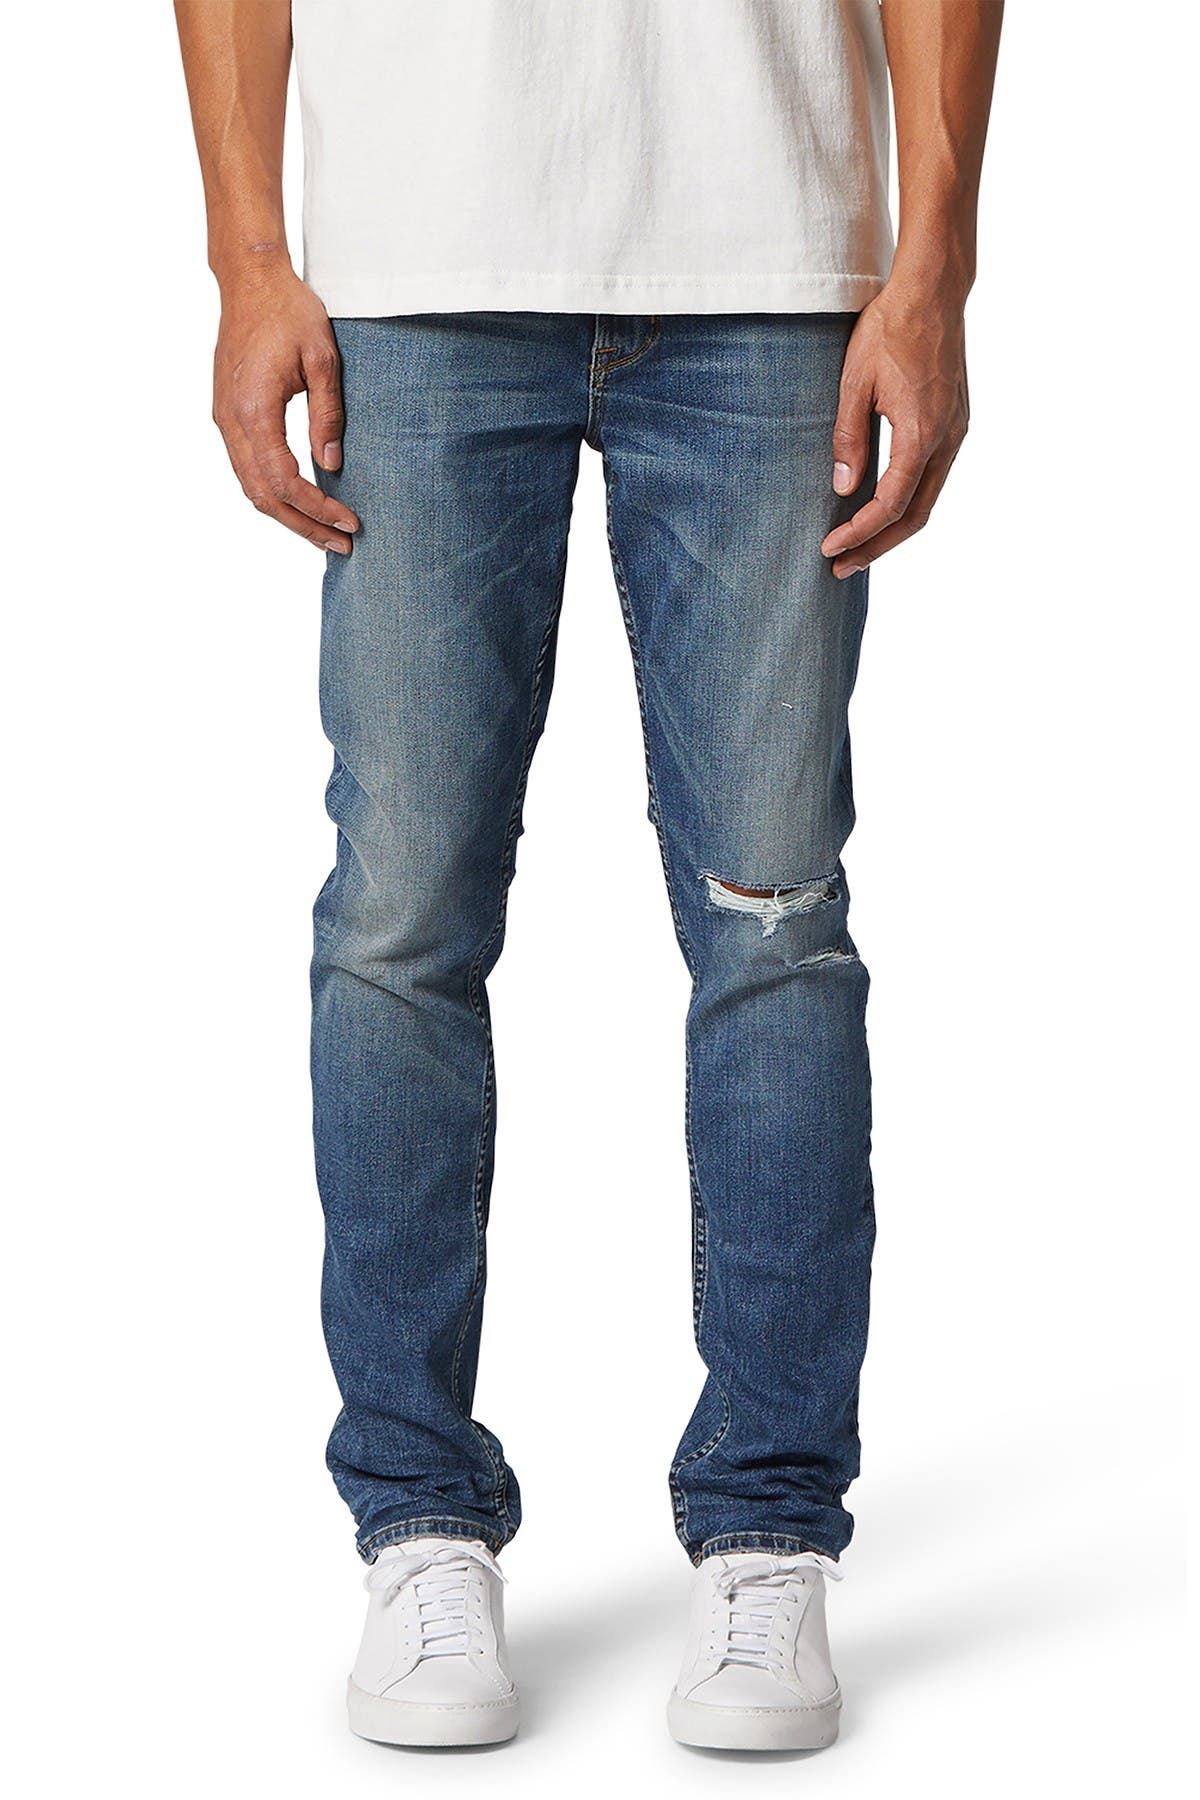 hudson jeans men's sale